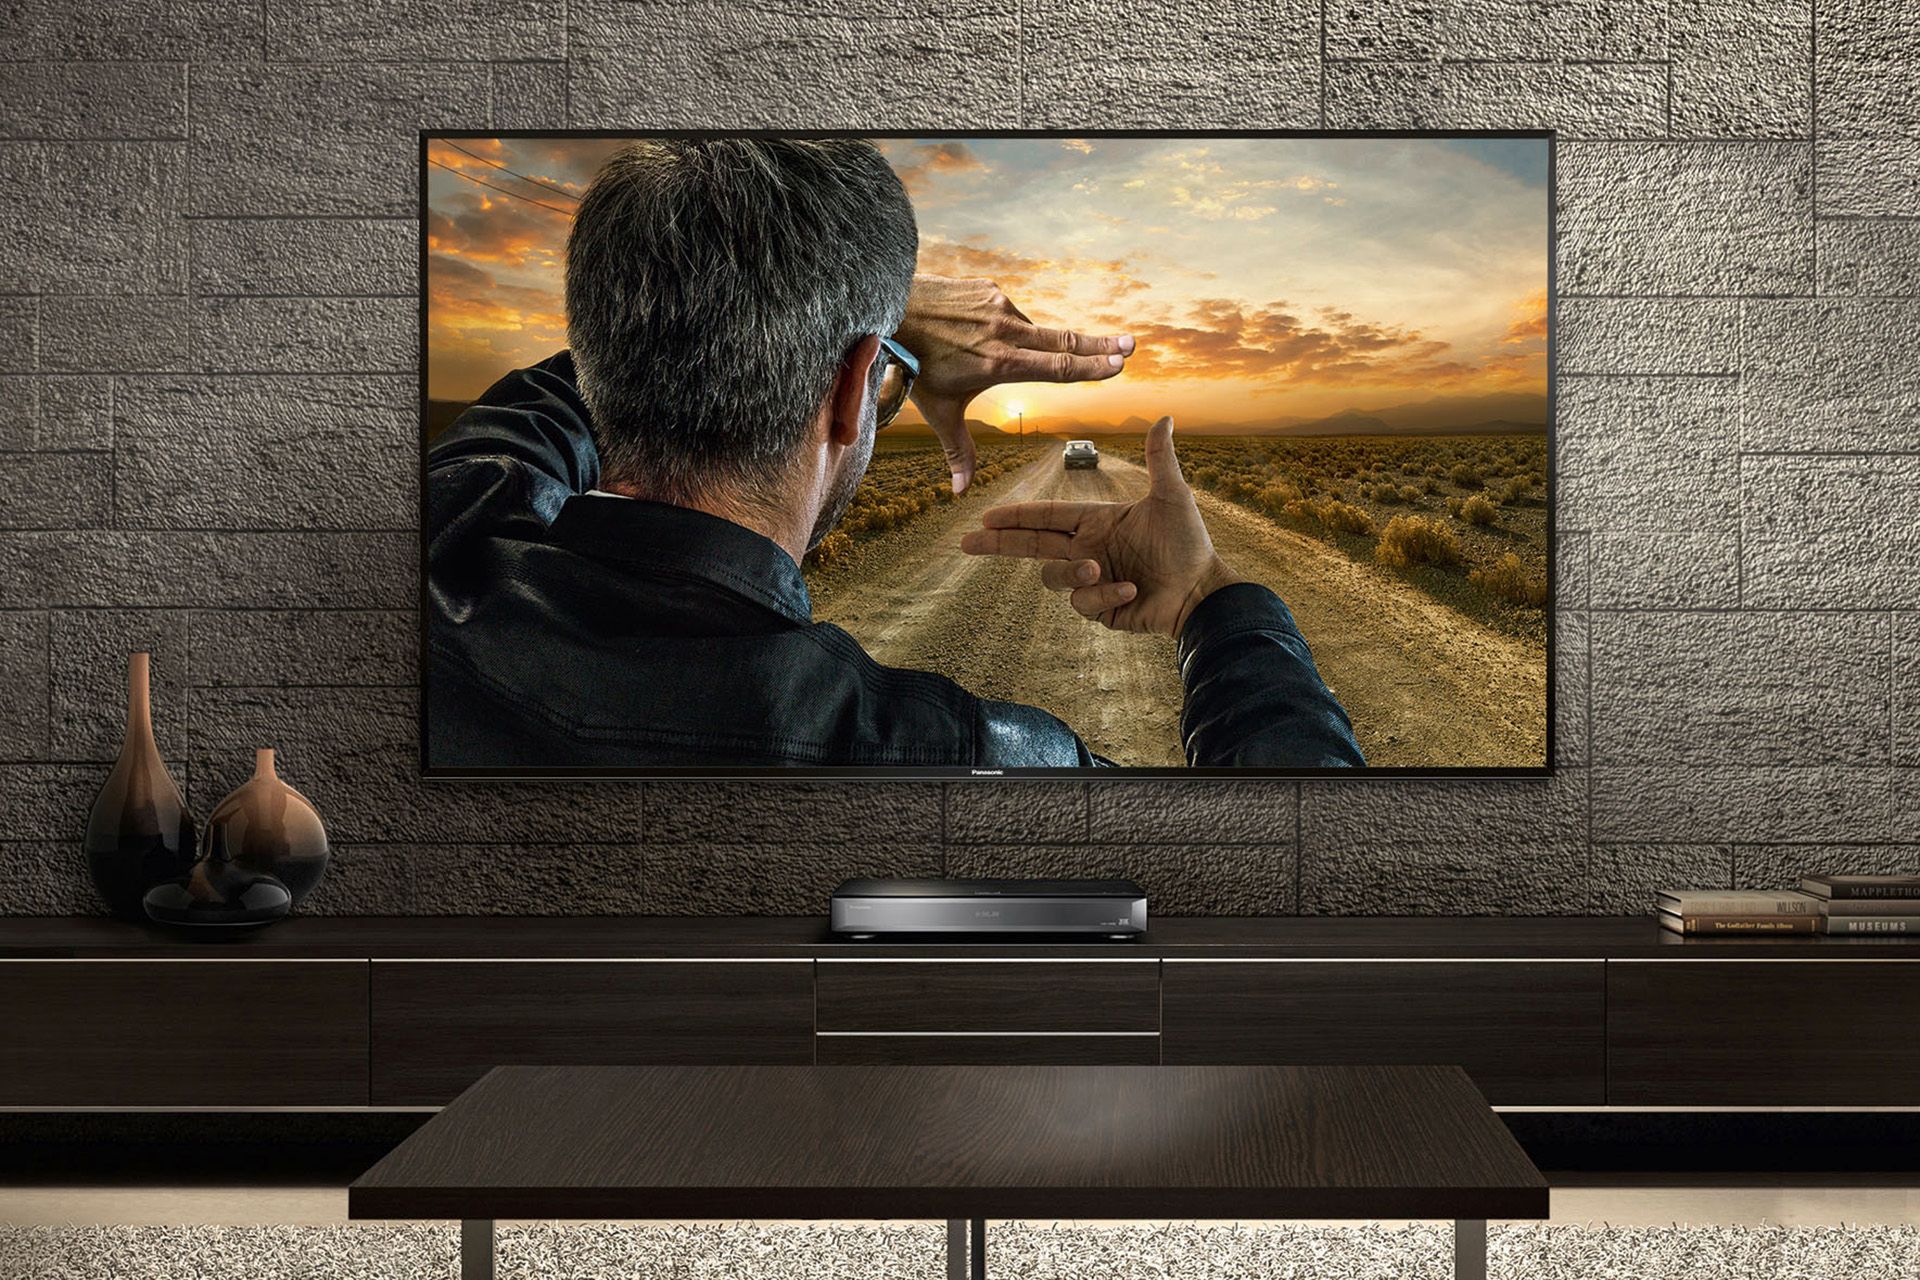 Neue Viera-Smart-TVs und BD-Player von - erleben Hause Hollywood Panasonic zu